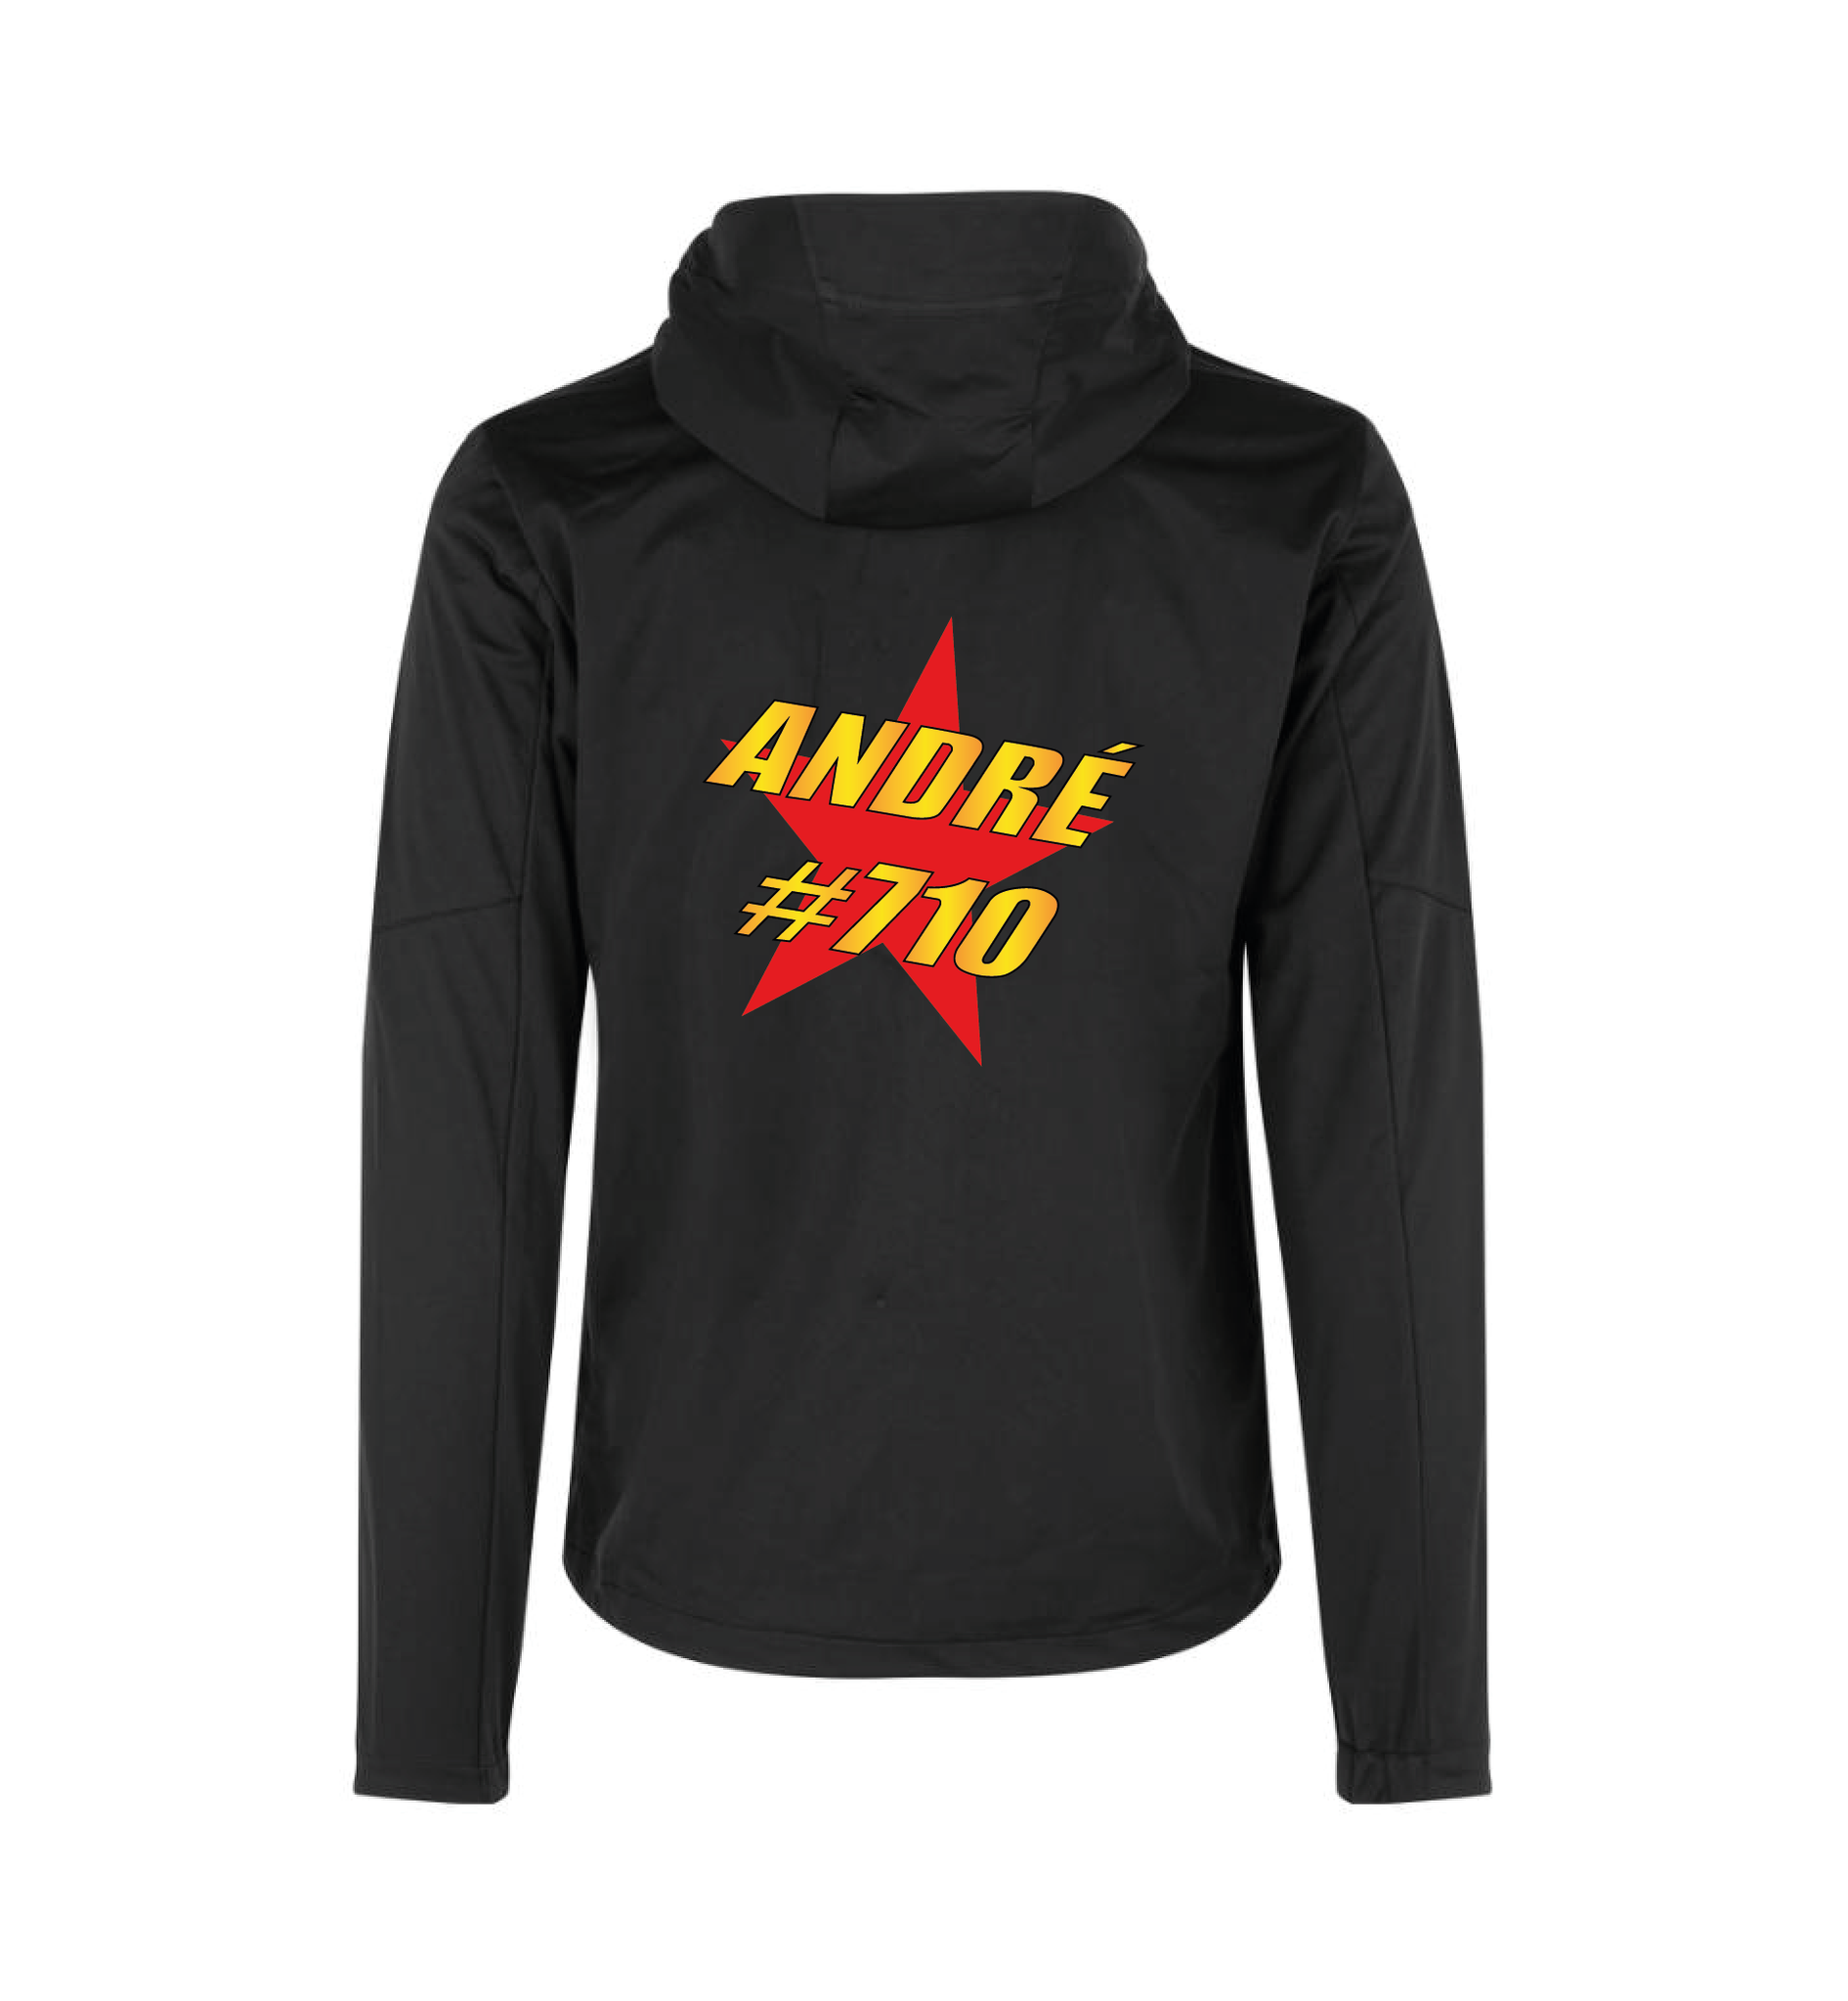 André #710 Softshelljakke